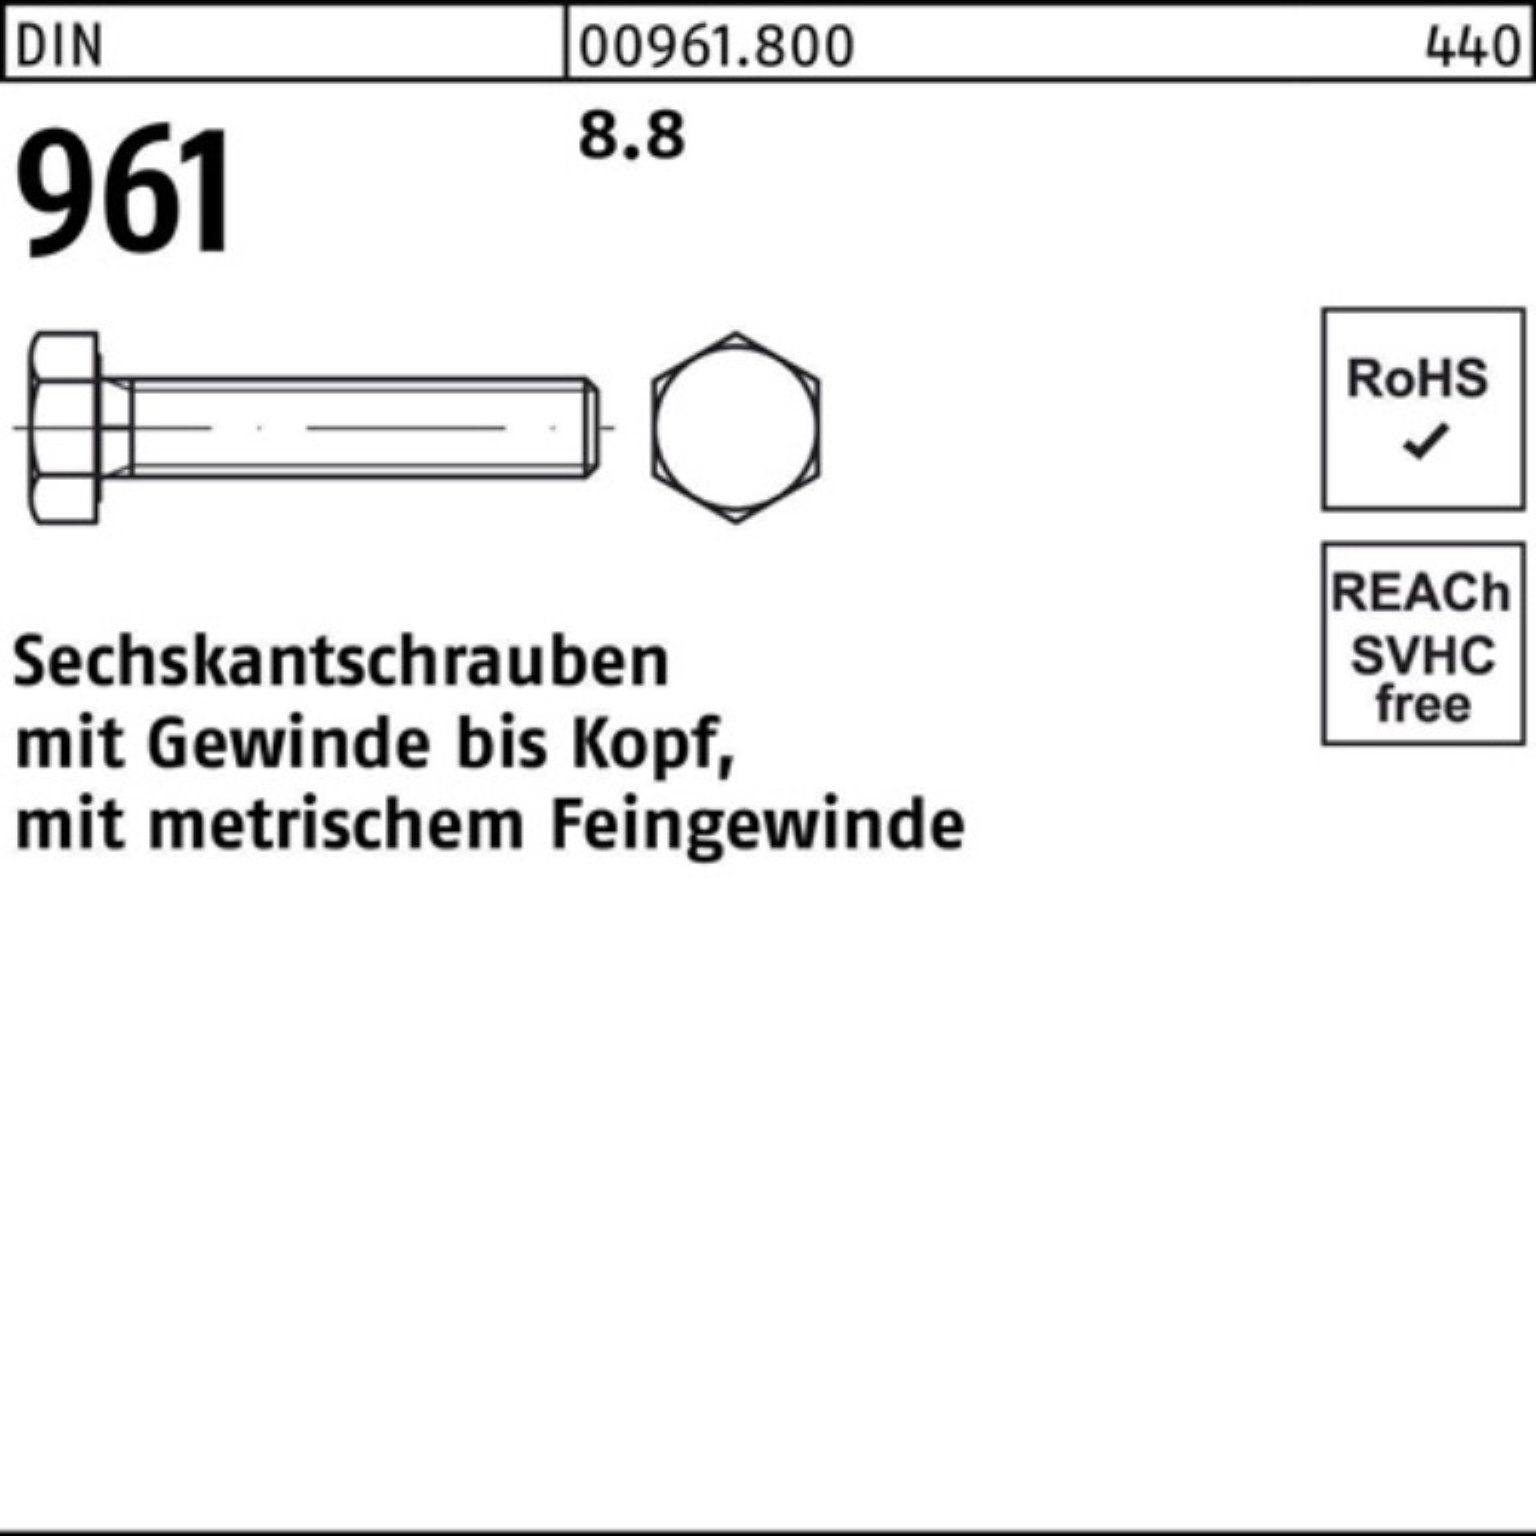 DIN Sechskantschraube Sechskantschraube M8x1x 100er DIN Pack 8.8 100 Reyher 80 Stück VG 961 96